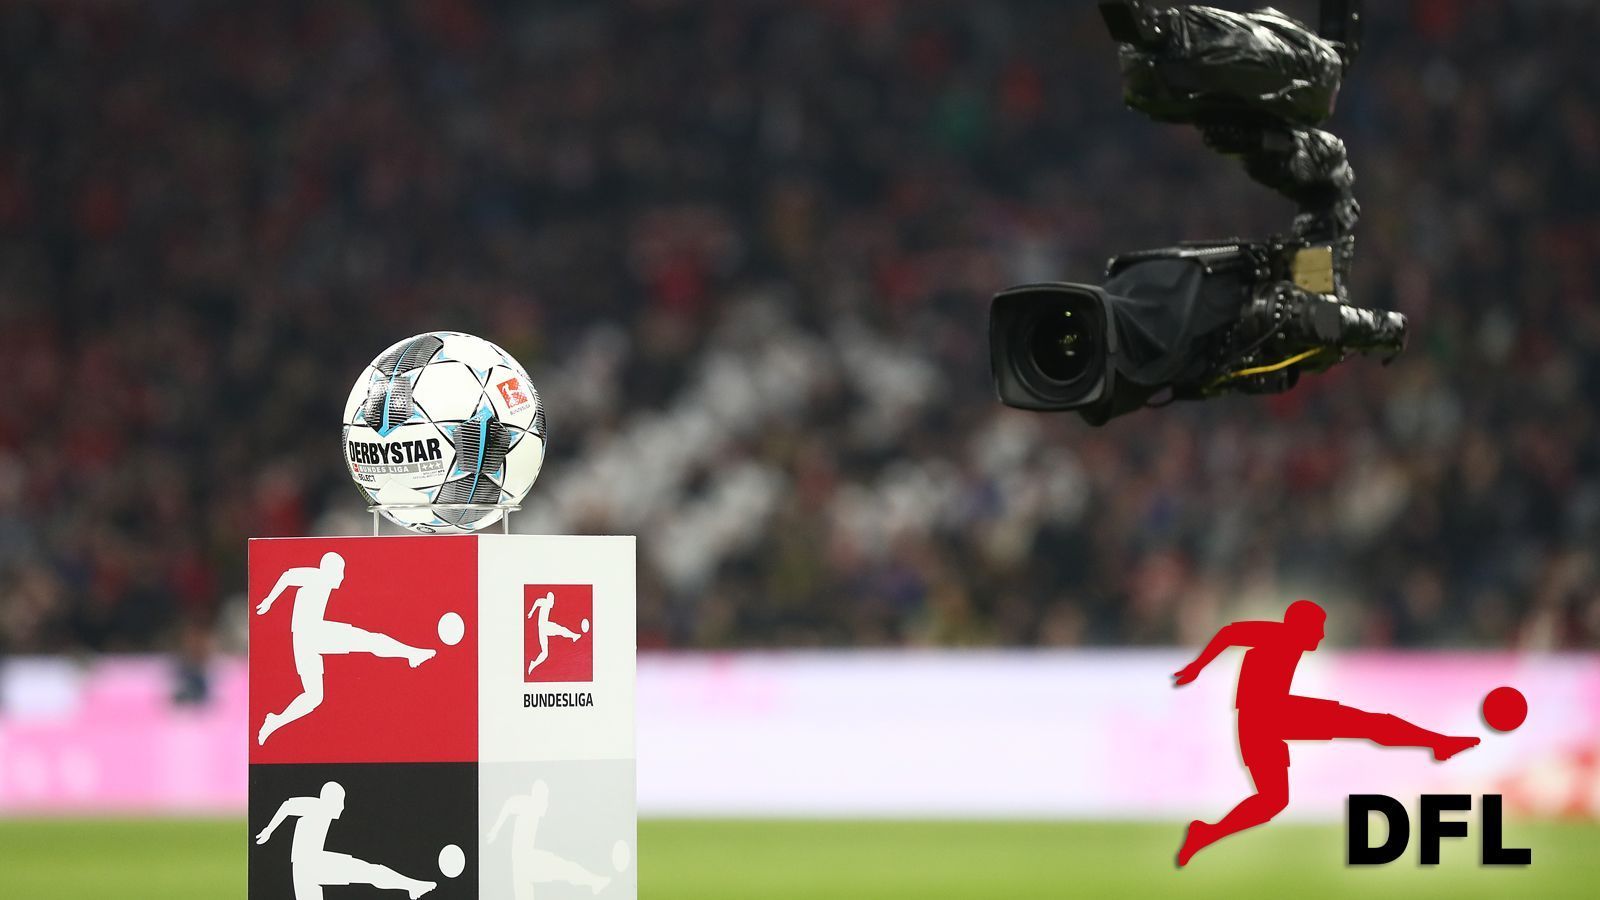 
                <strong>Bundesliga-Rechte: So könnten Fans ab 2021/22 Bundesliga schauen</strong><br>
                Die Bundesliga hat bekanntgegeben, dass es ab 2021 neue Anstoßzeiten geben wird. Zudem werden in diesem Frühjahr auch die Rechte zur höchsten deutschen Spielklasse von 2021 bis 2025 neu vergeben. Dabei gibt es insgesamt fünf Live-Pakete, die die Interessenten erwerben können – vier davon für Pay, eines für Free-TV. ran.de zeigt, wie die Fans in Zukunft die Bundesliga schauen könnten.
              